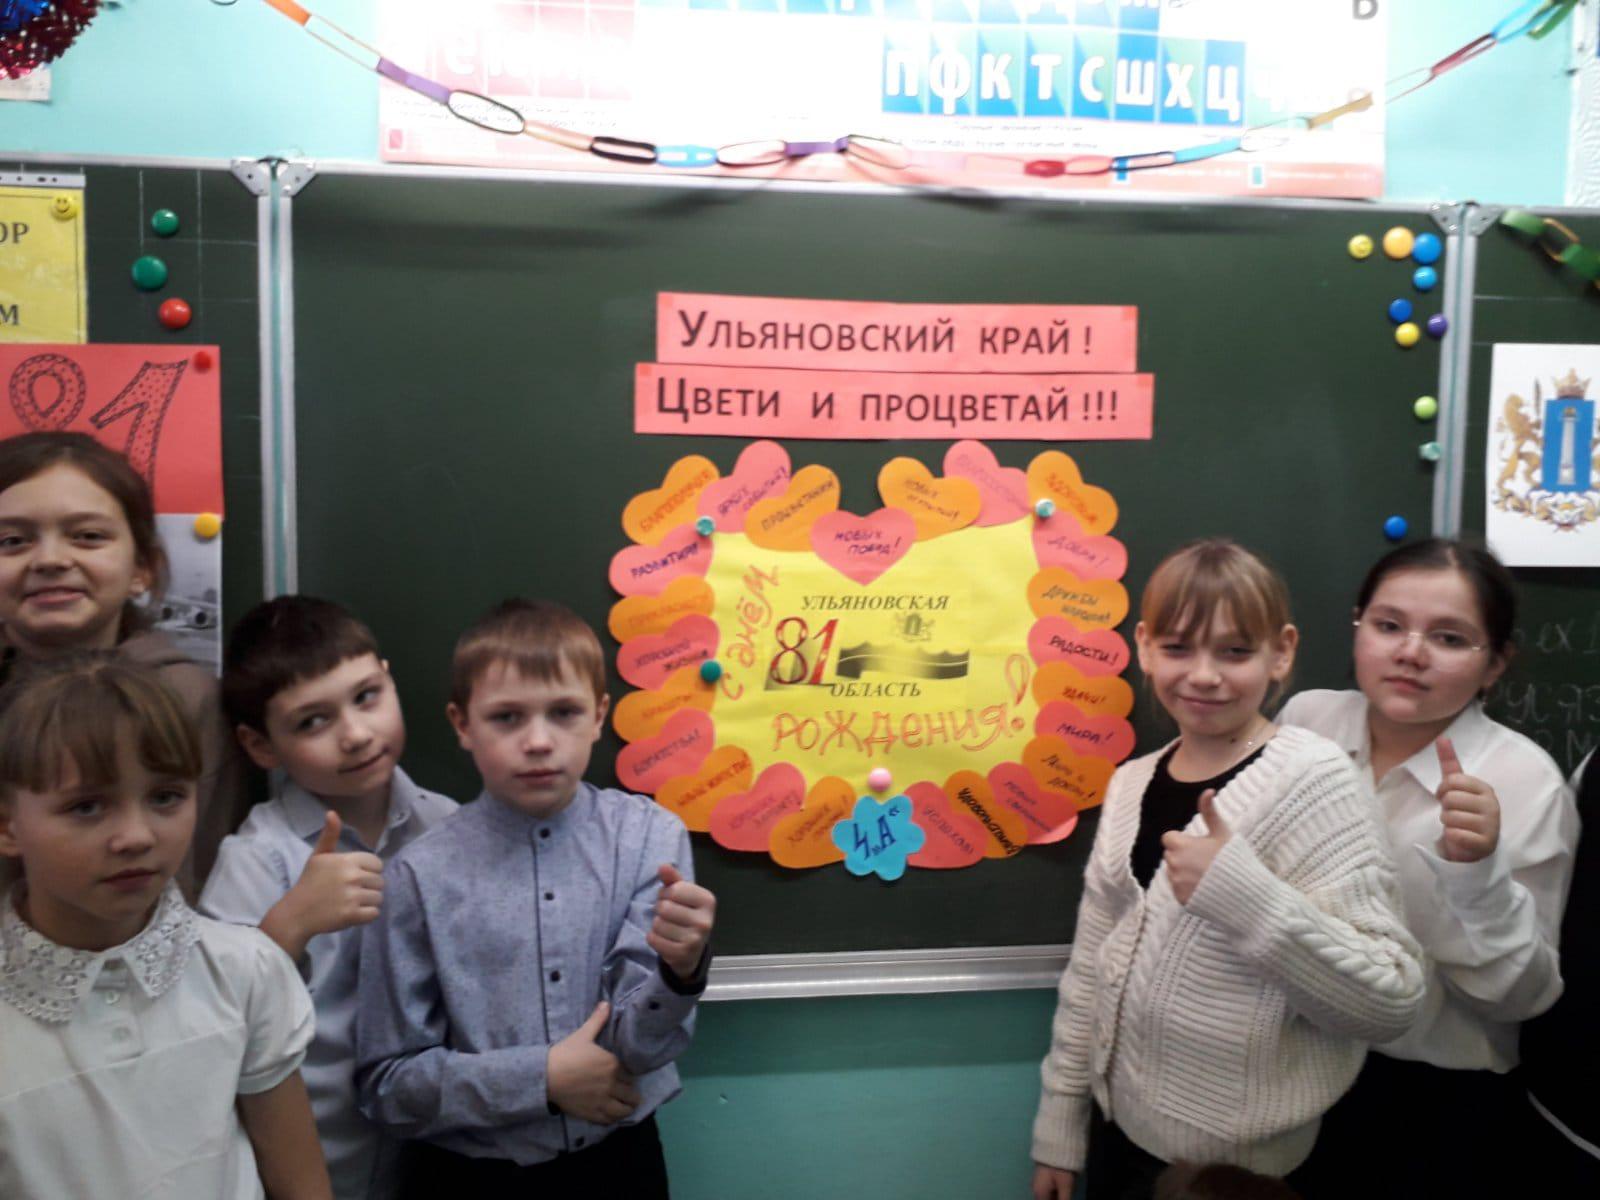 В школах района проведены мероприятия к 81-летию со дня образования Ульяновской области.